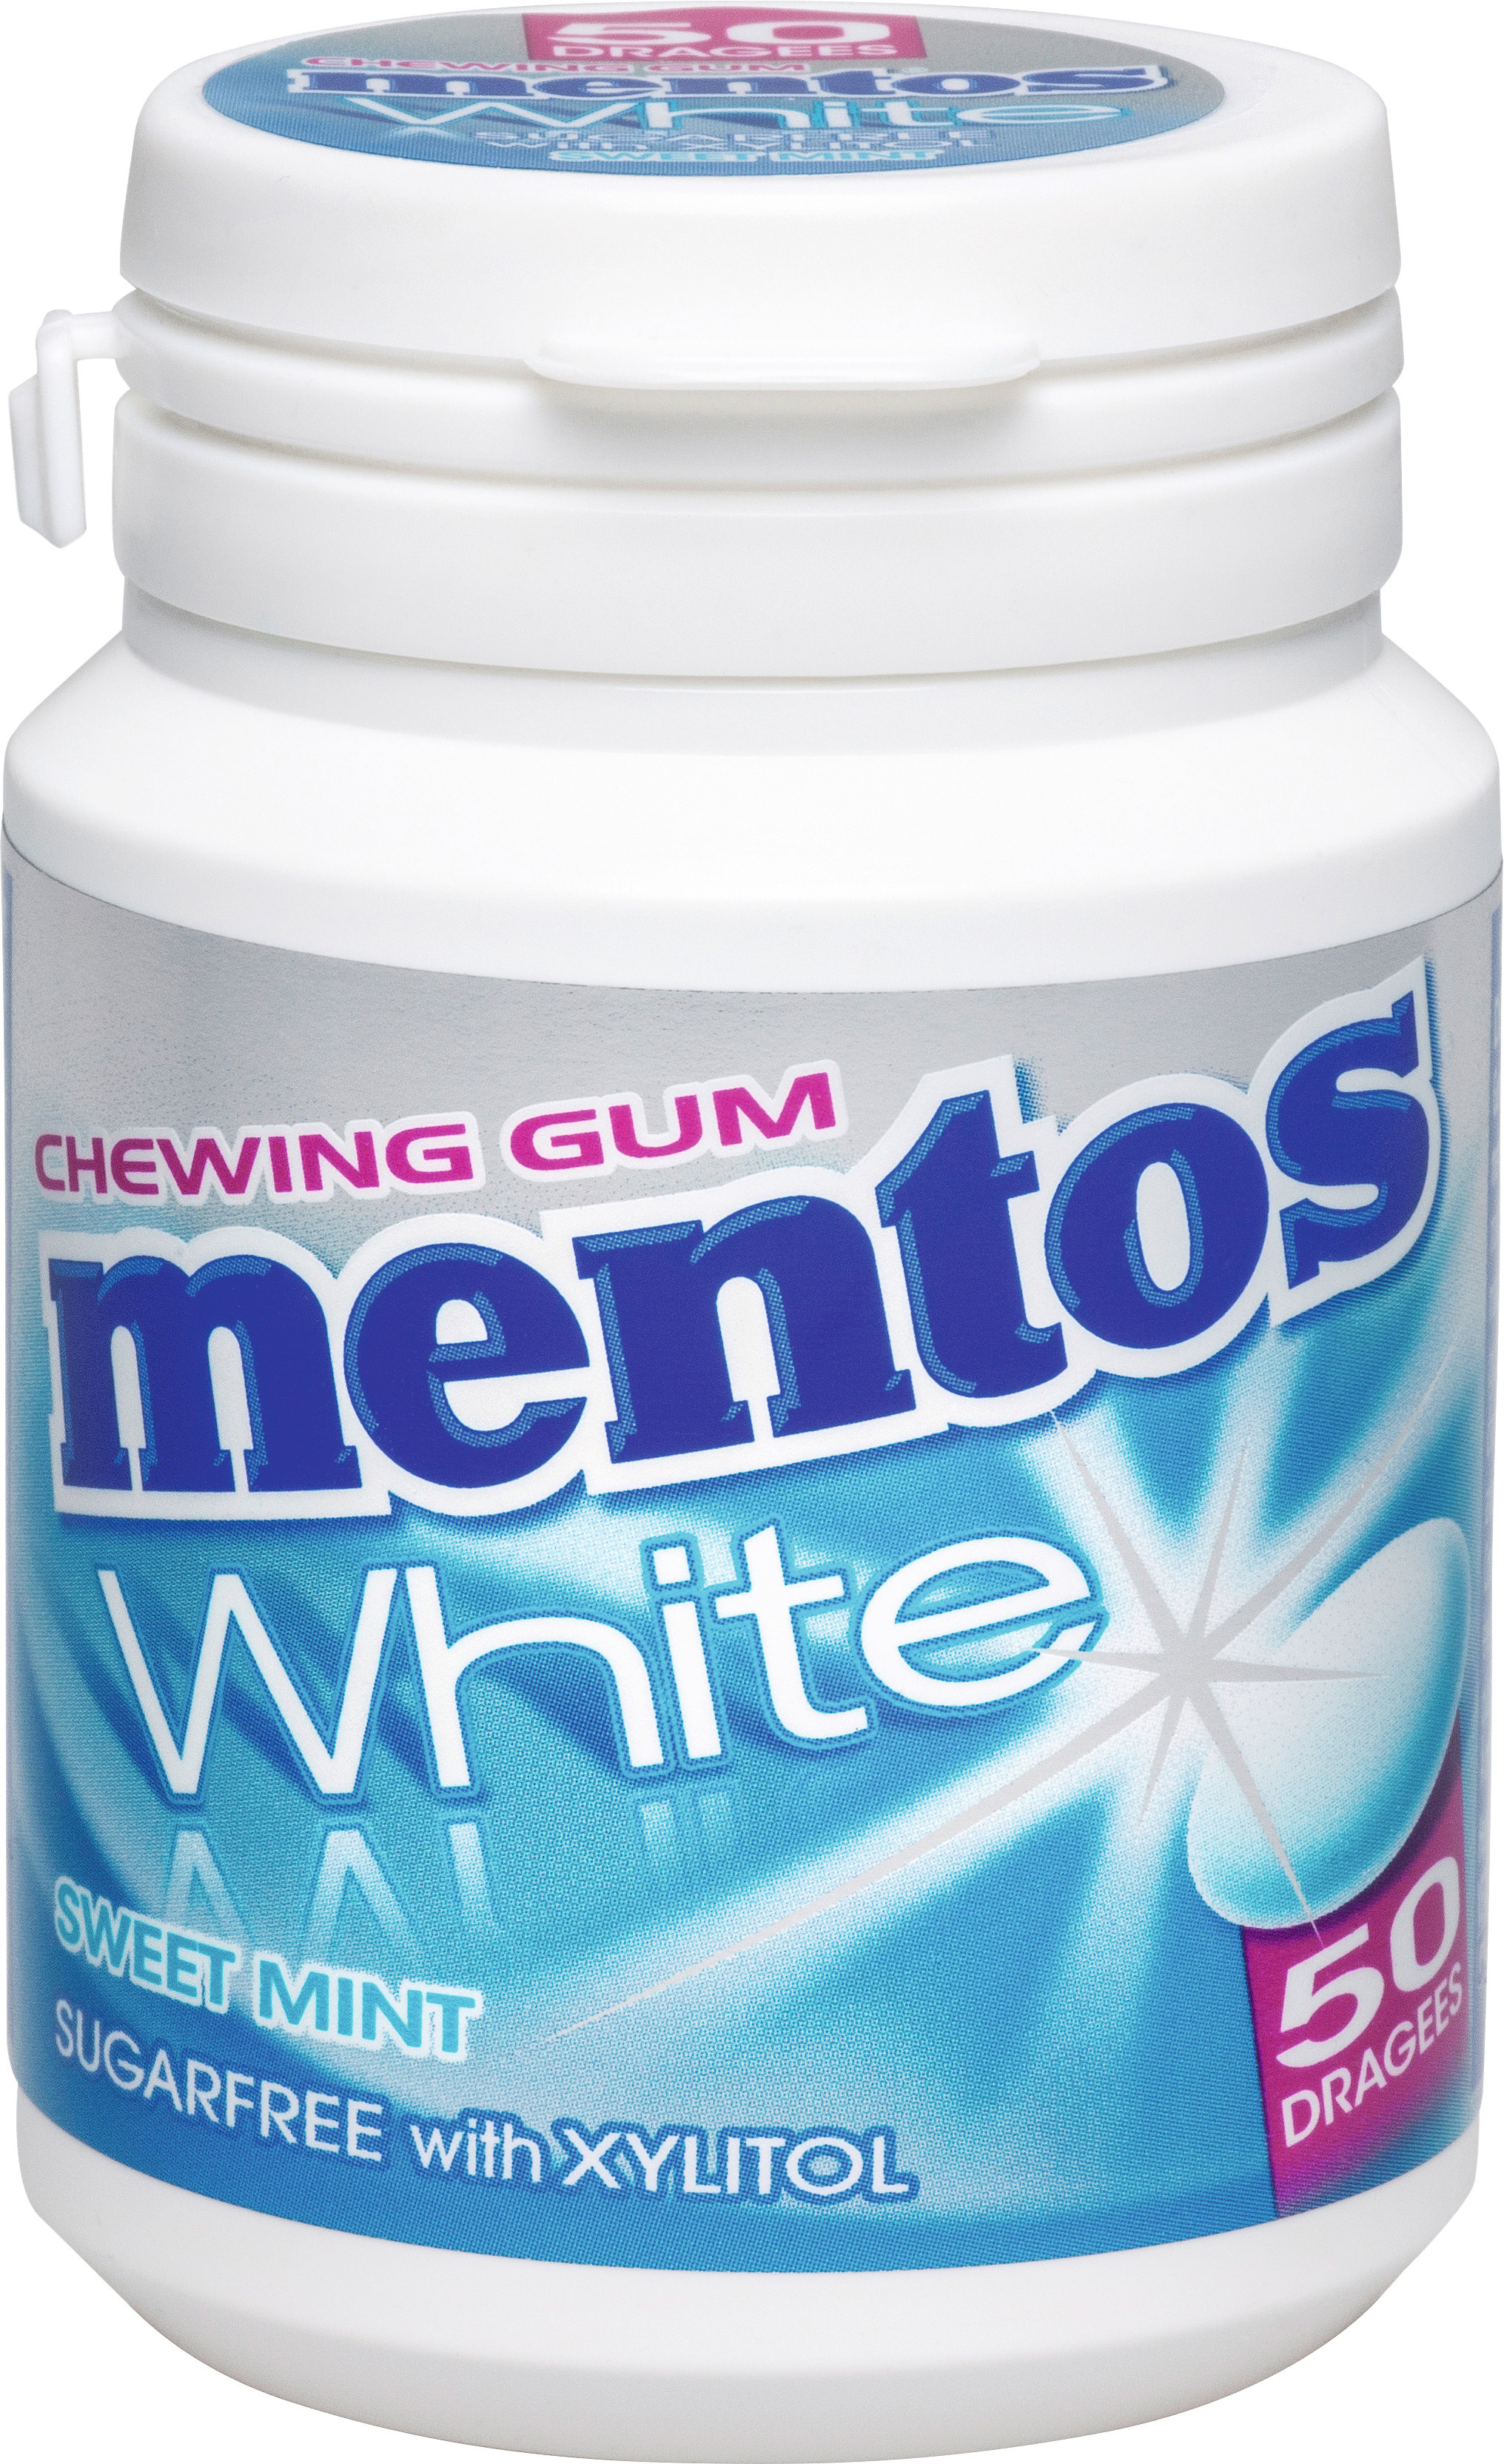 MENTOS Kaugummi, White Sweet Mint 109400000279 6 x 75 g